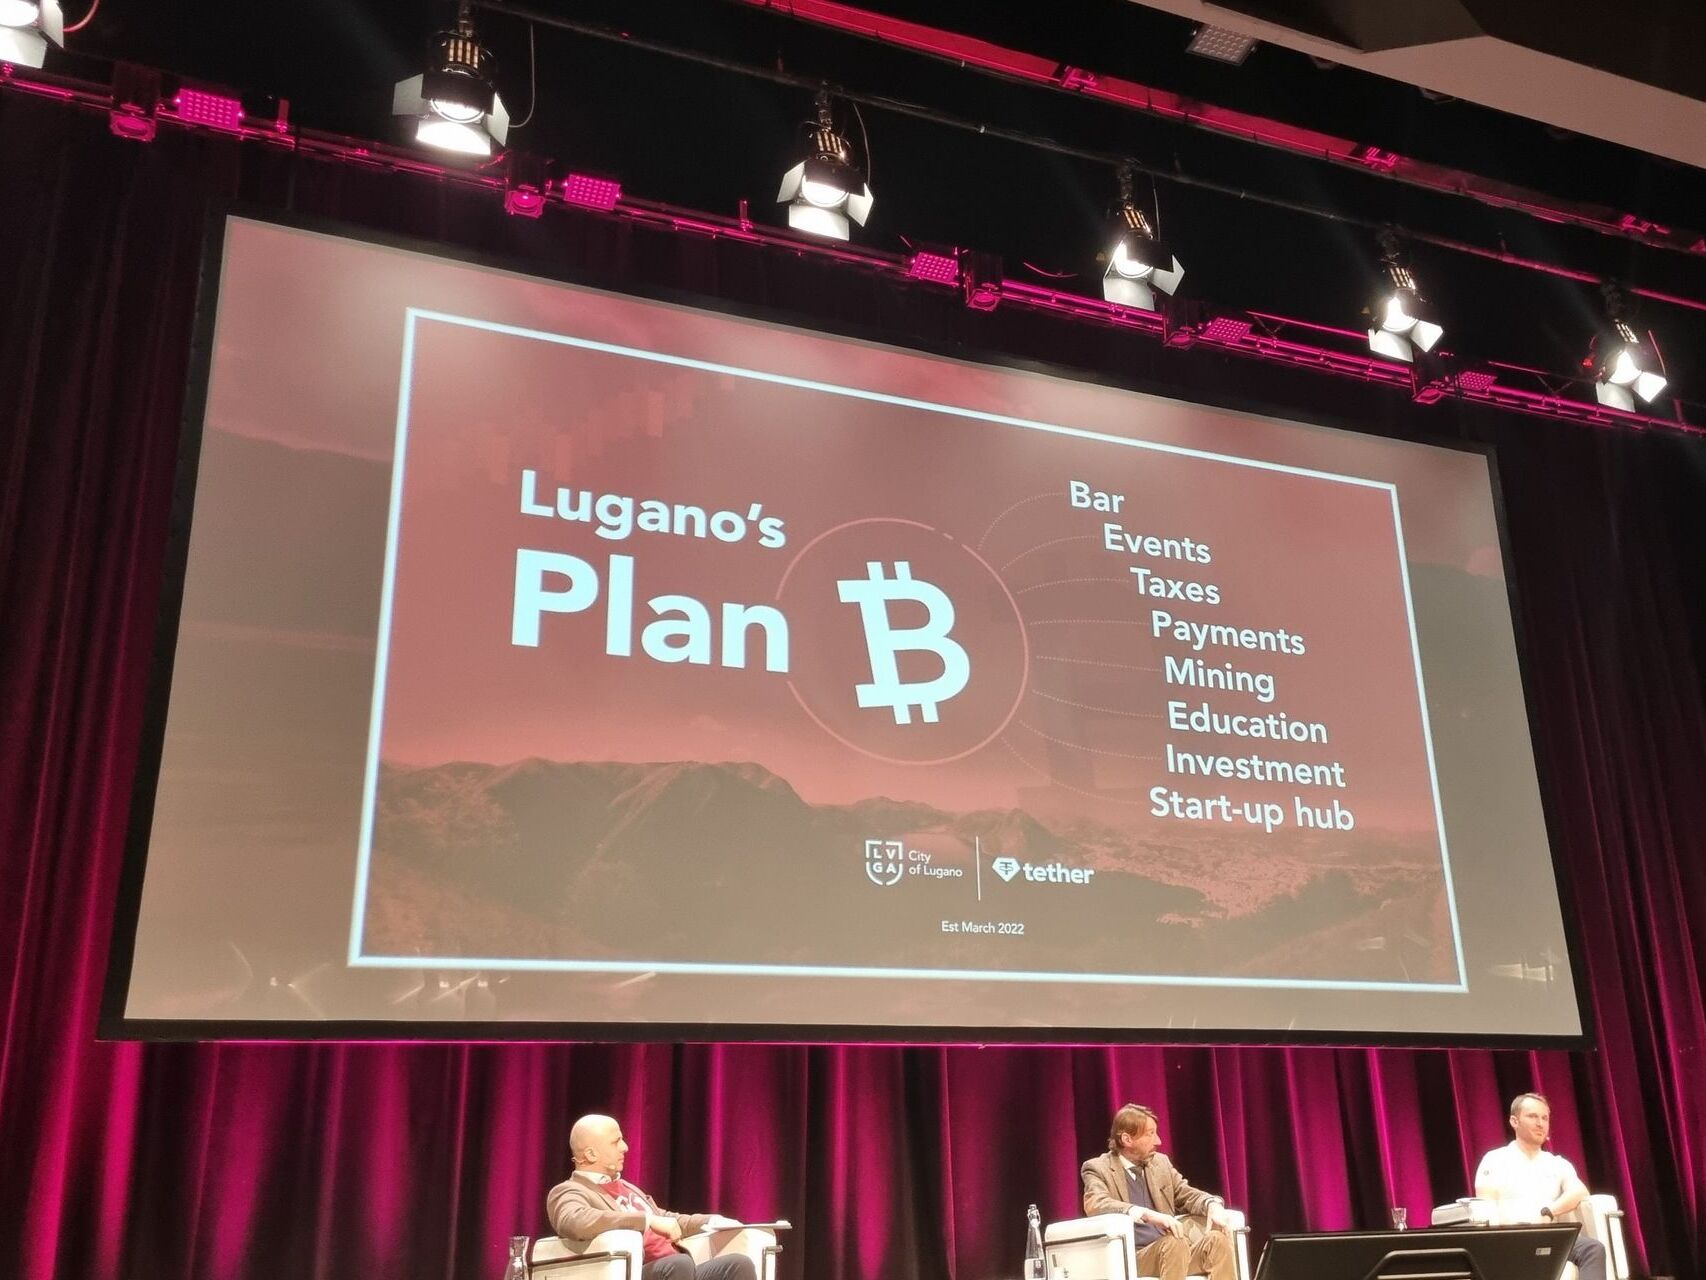 Prezentacija, 3. ožujka 2022. u Kongresnom centru, suradnje između Grada Lugana i Tether Operations Limited: "Plan B" namjerava stvoriti europski centar izvrsnosti za usvajanje kriptovaluta i tehnologije Blockchain